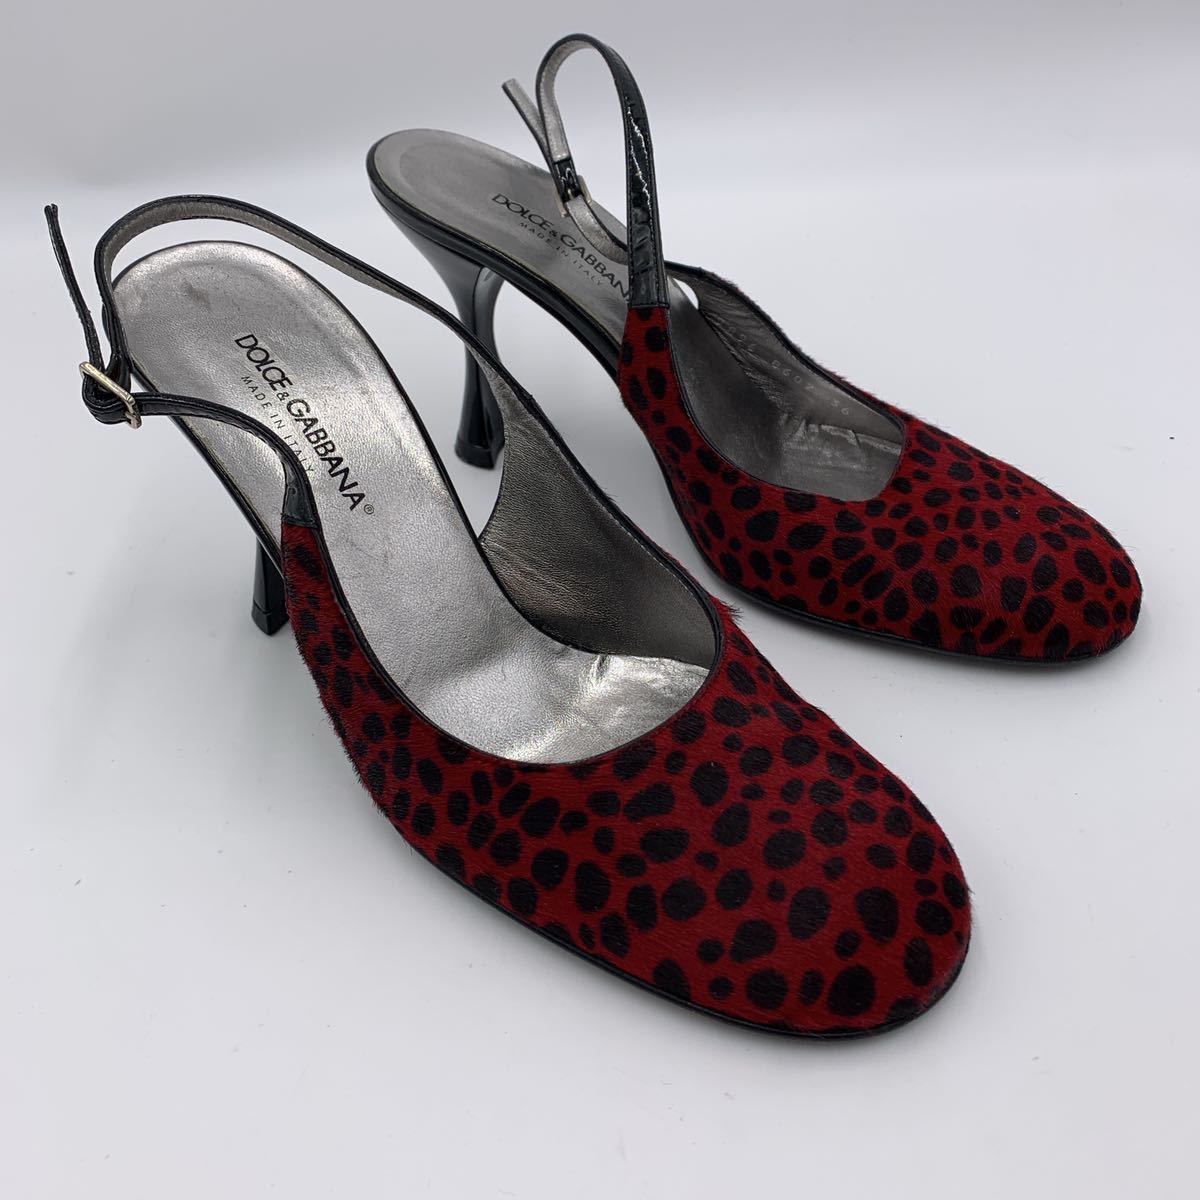 Z @ イタリア製 '高級!!ラグジュアリー靴' DOLCE&GABBANA ハラコレザー使用 サンダル 婦人靴 ヒール バックストラップ SIZE:36 シューズ_画像2